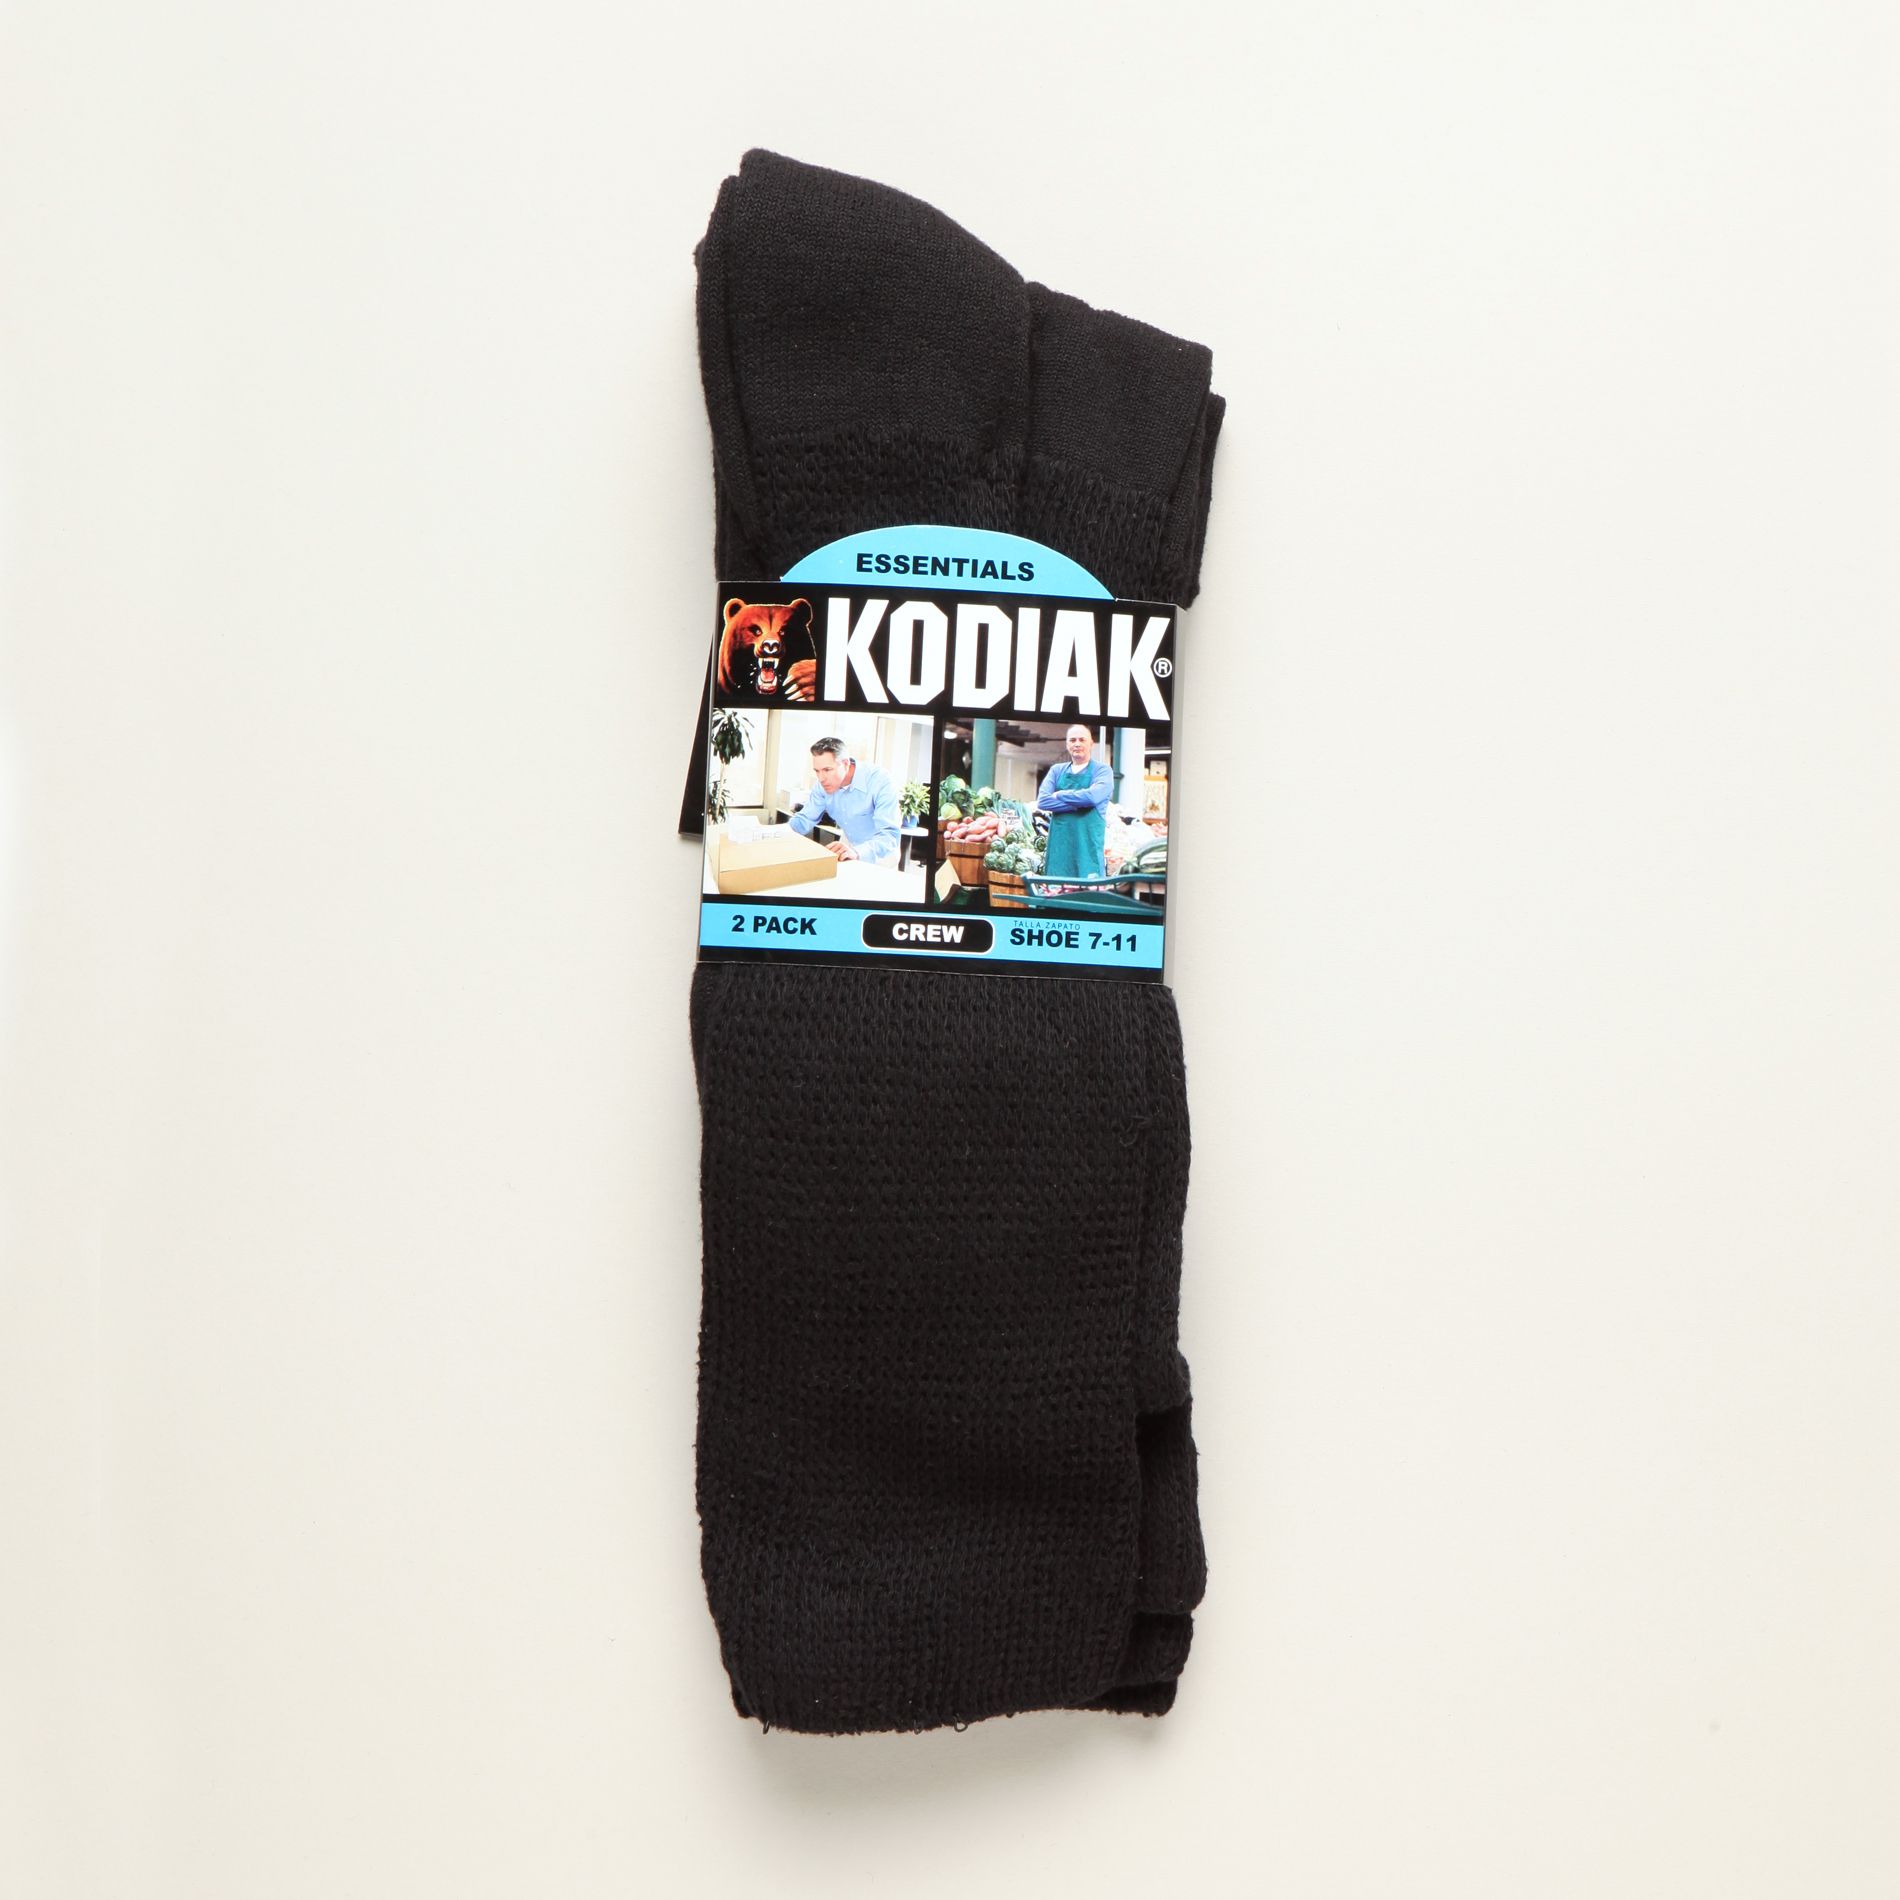 Kodiak Men&#8217;s Socks 2 Pack Crew Black